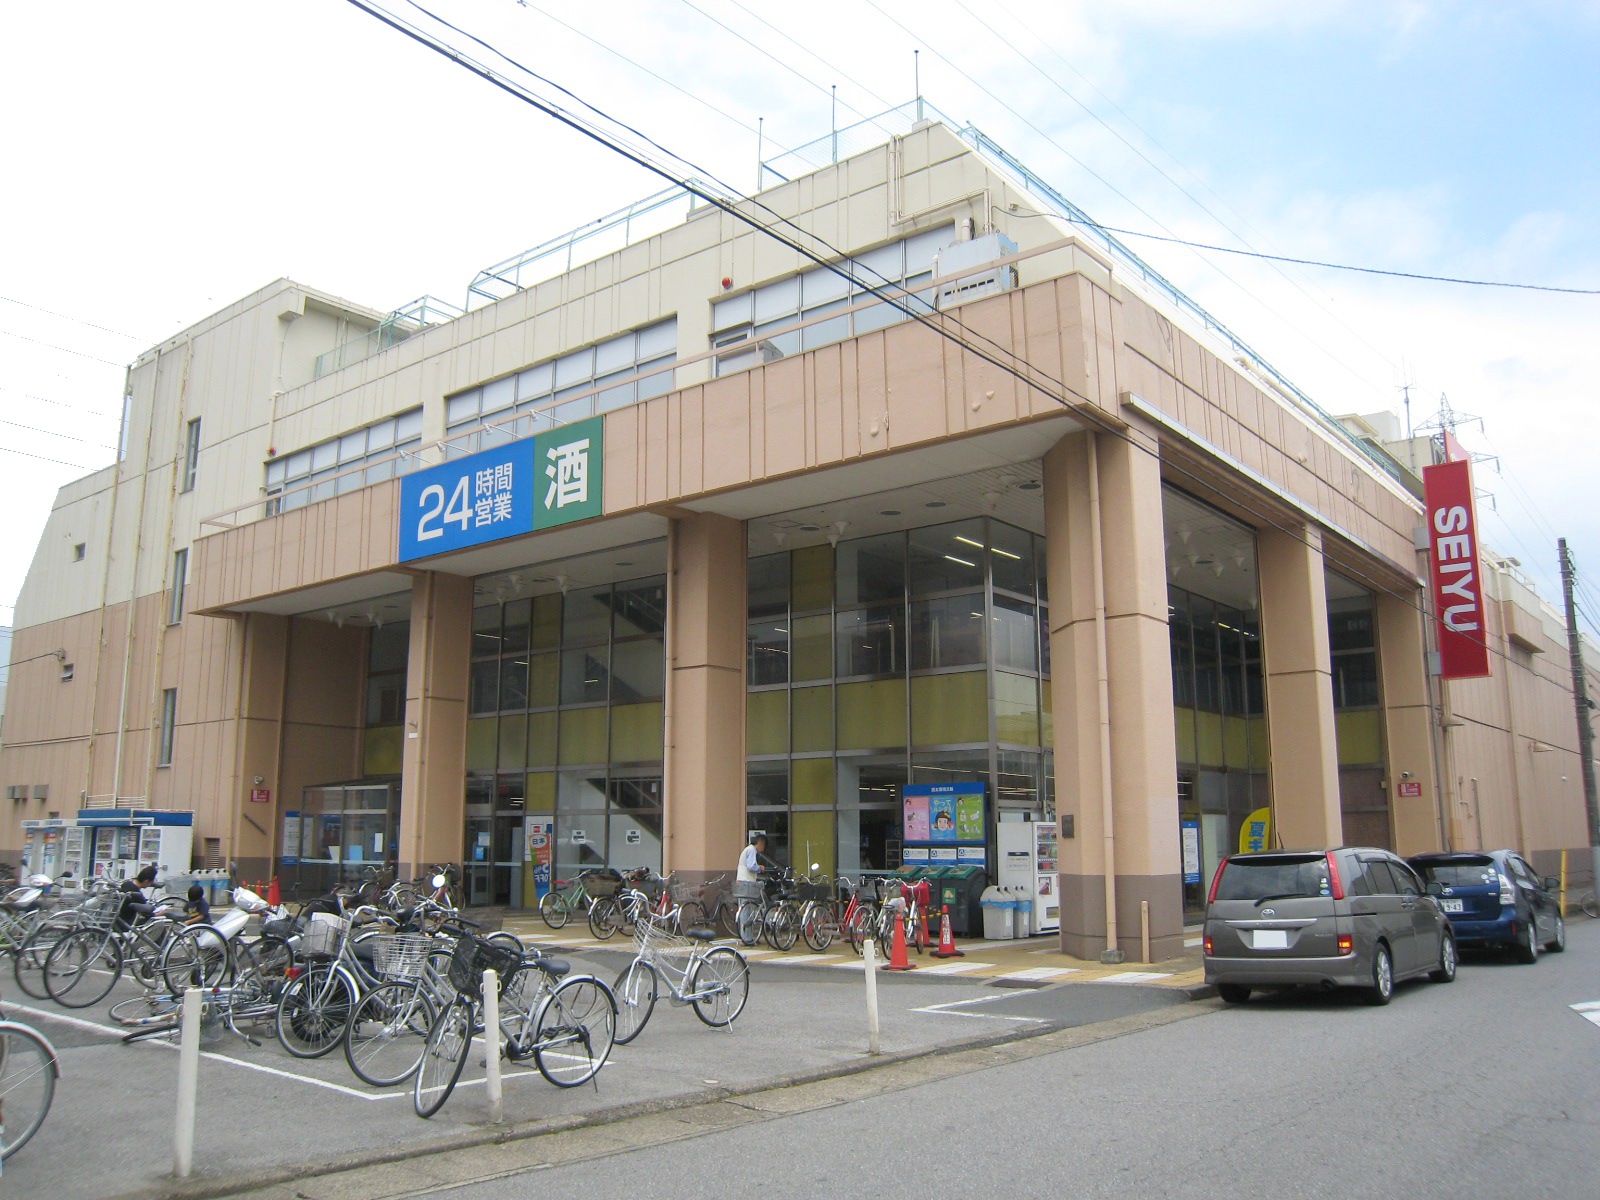 Supermarket. Seiyu Tsuga store up to (super) 635m